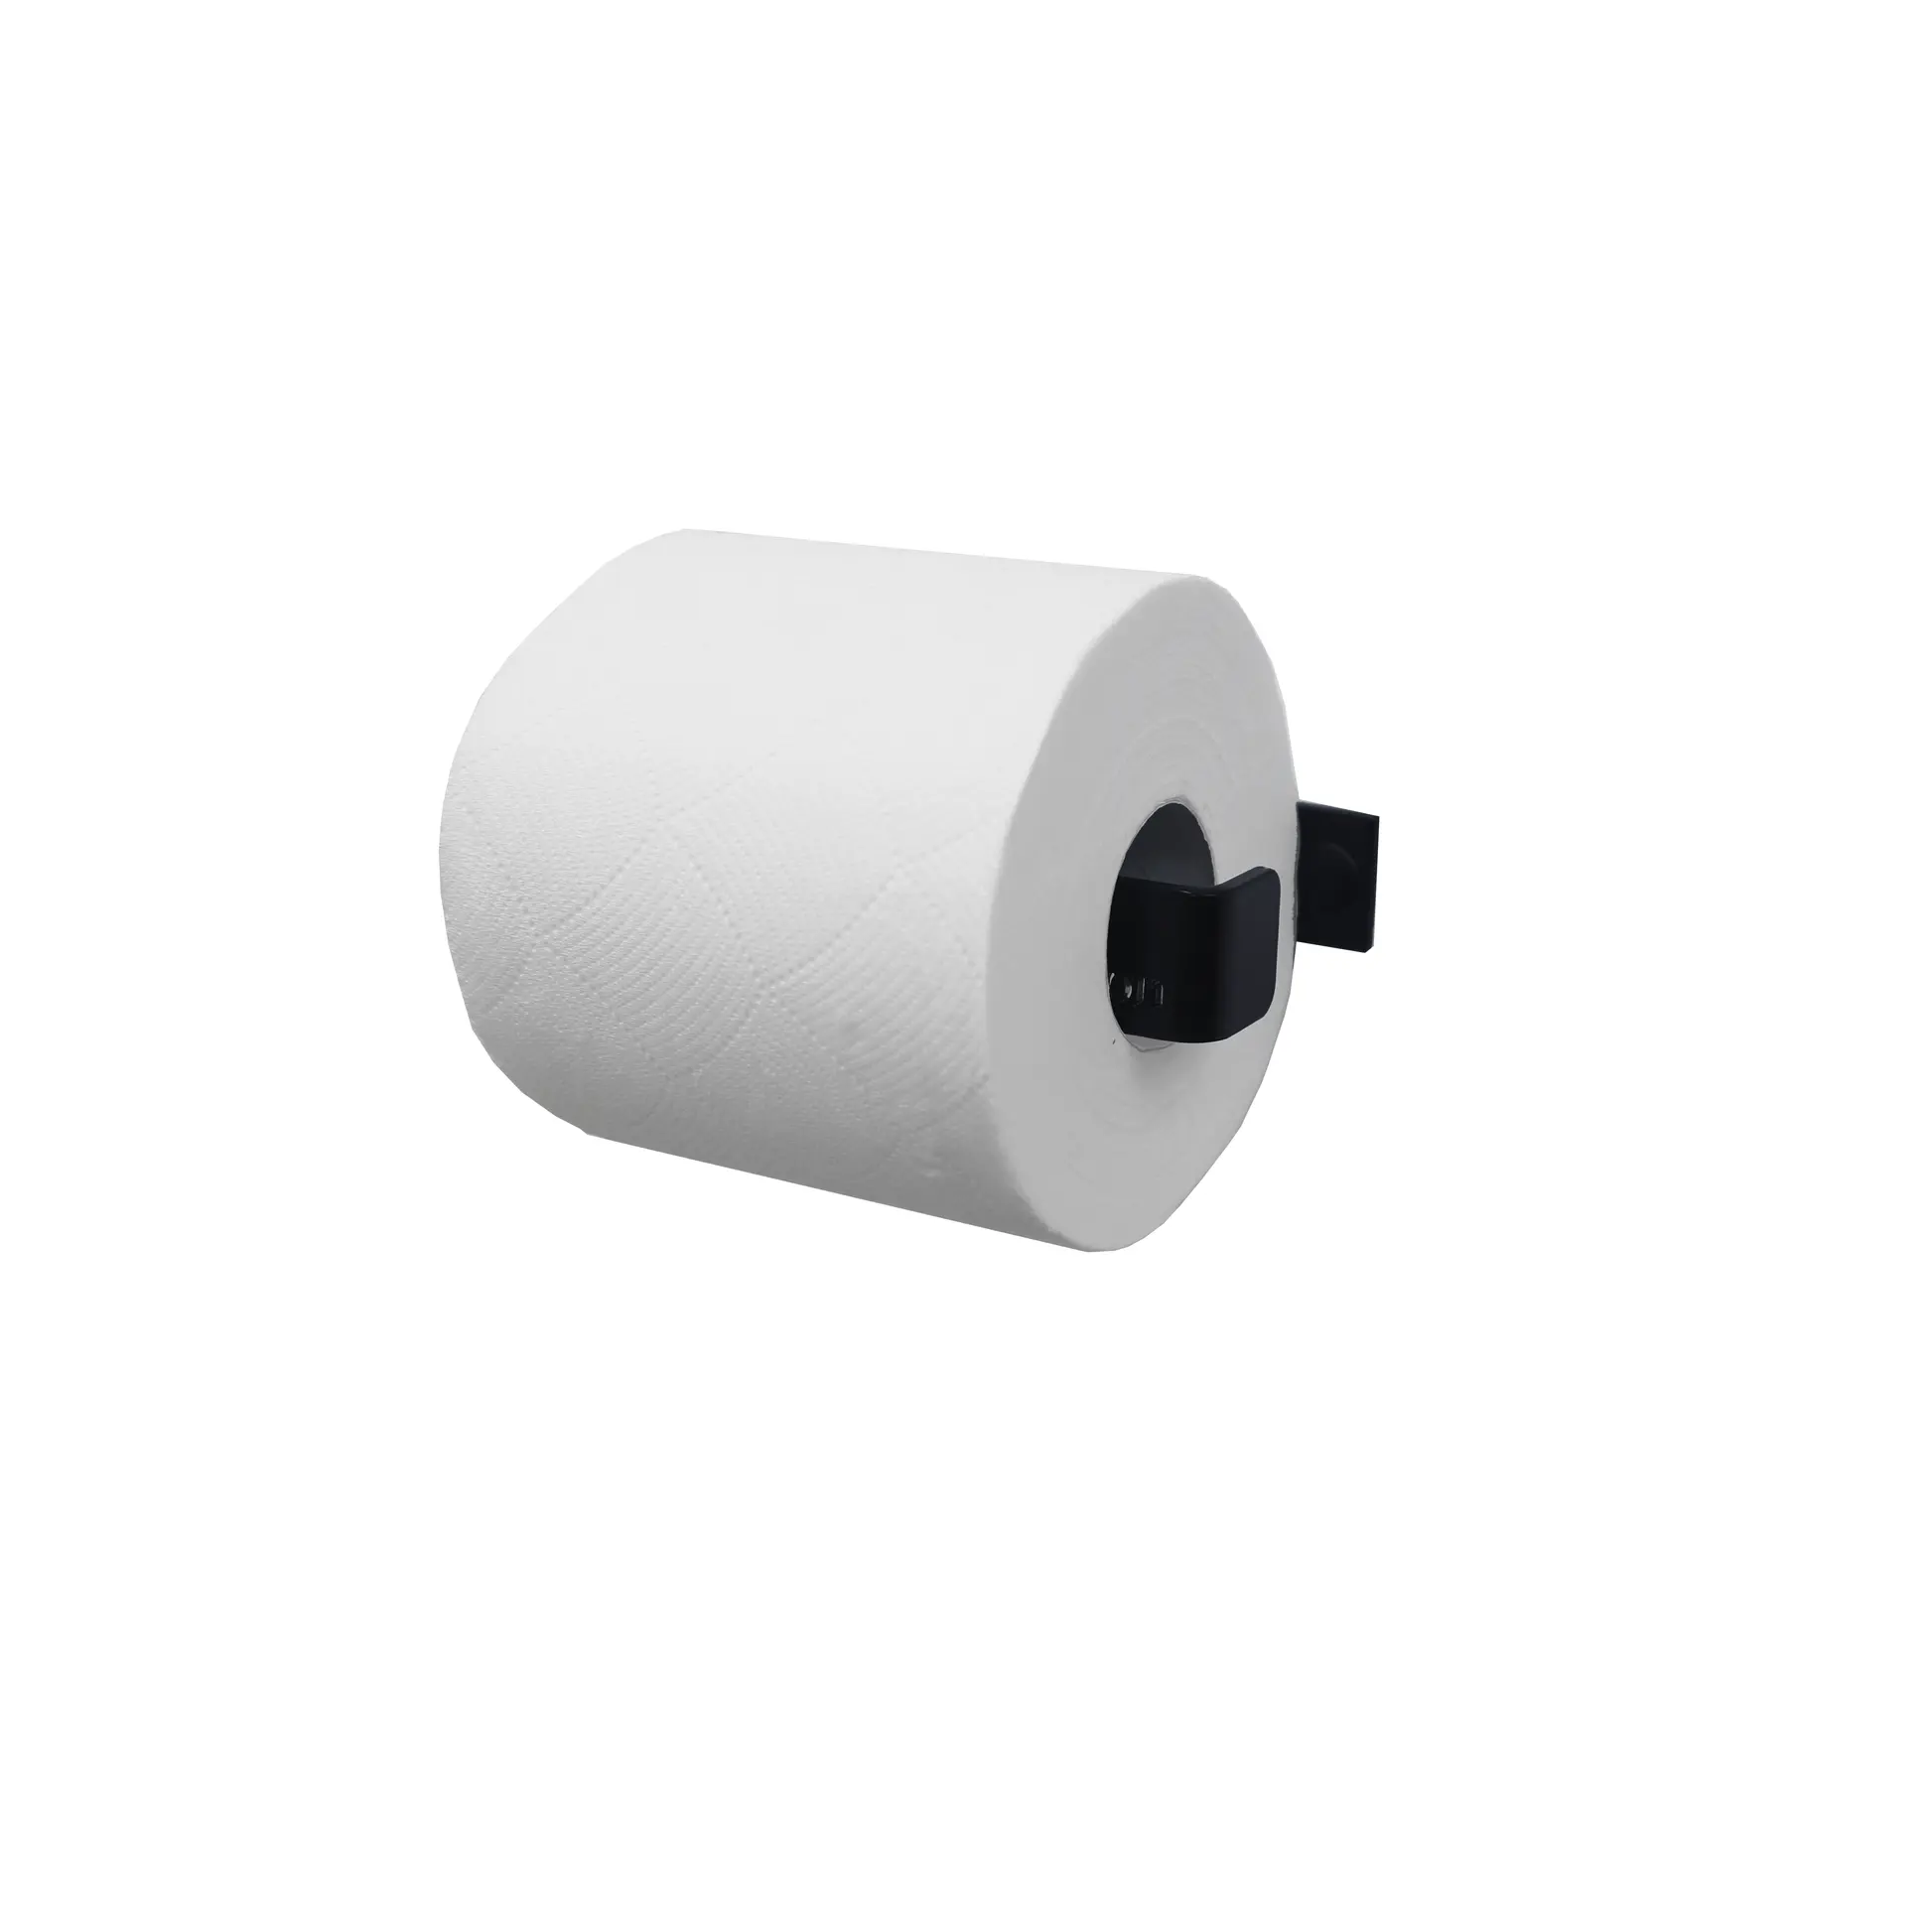 Big 100% rollos Jumbo papel tisú virgen papel higiénico servilletas de baño